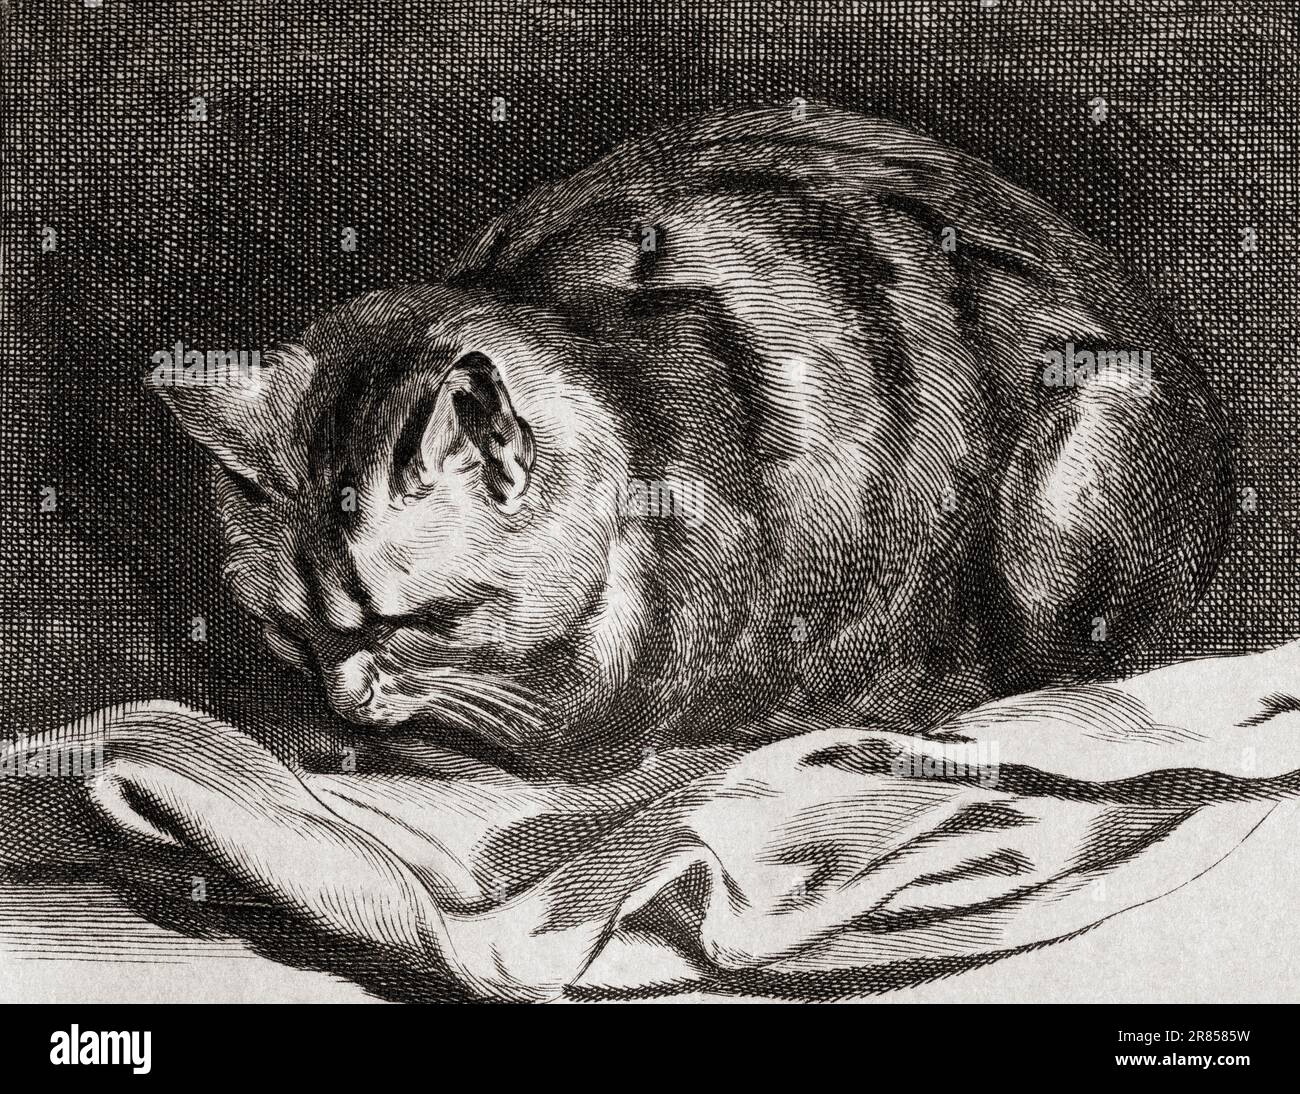 Le petit chat, après la gravure par Cornelius Visscher. De l'Histoire de la Gravoure, publié en 1880 Banque D'Images